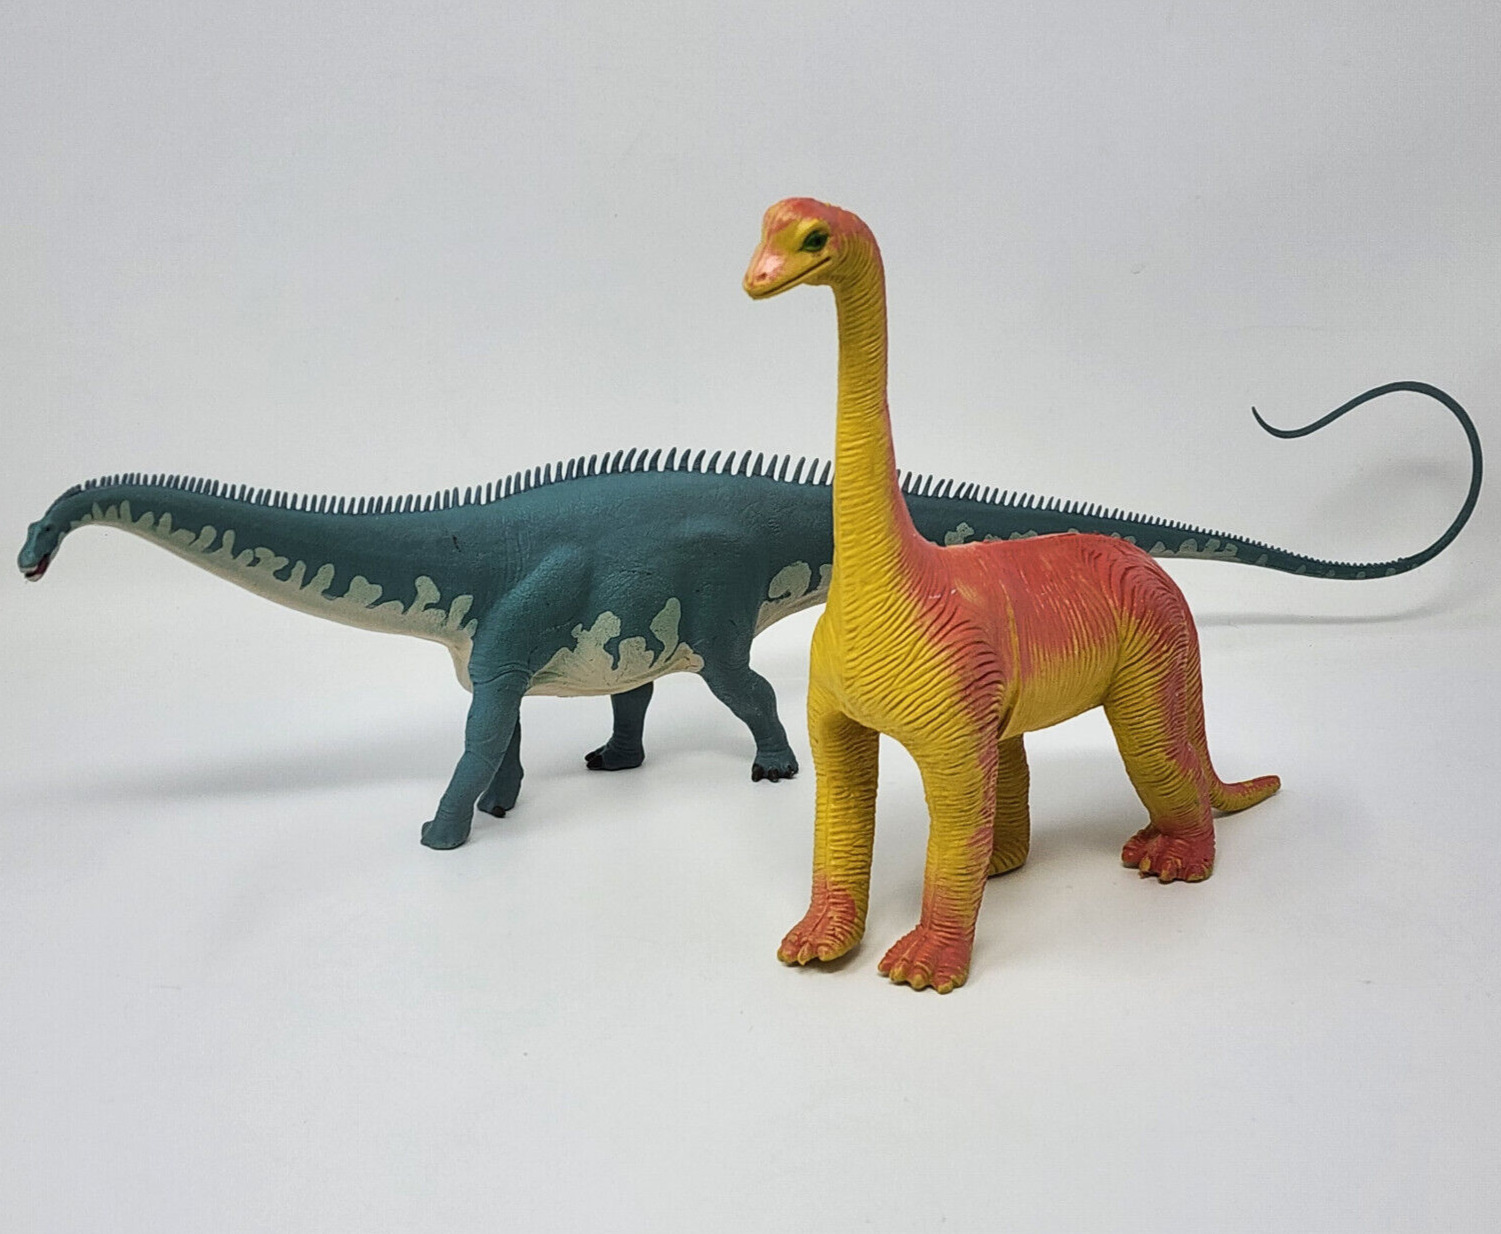 2 Dinosaur Toys 1985 Imperial Brontosaurus & 2017 Safari Diplodocus